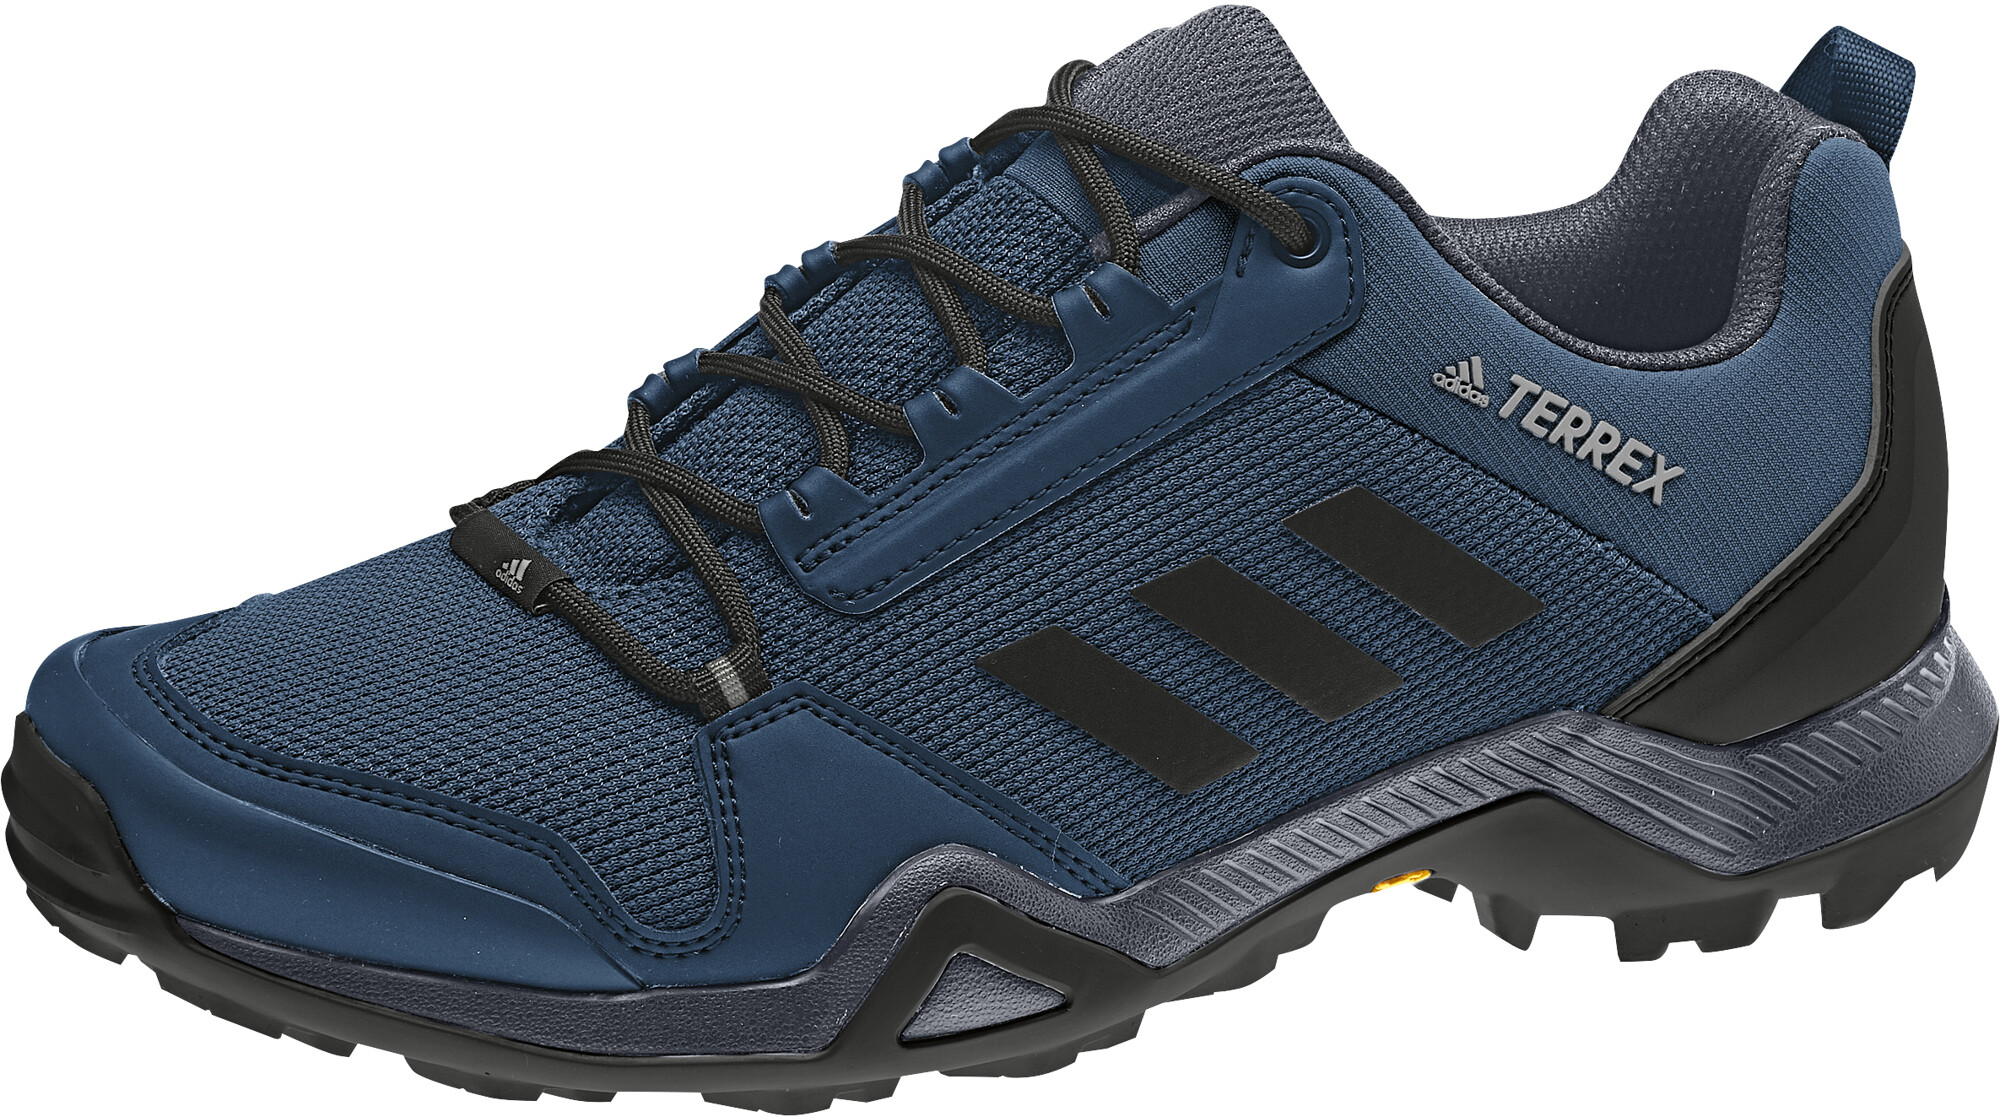 Adidas Terrex Ax3 Herren - About Styles Blog